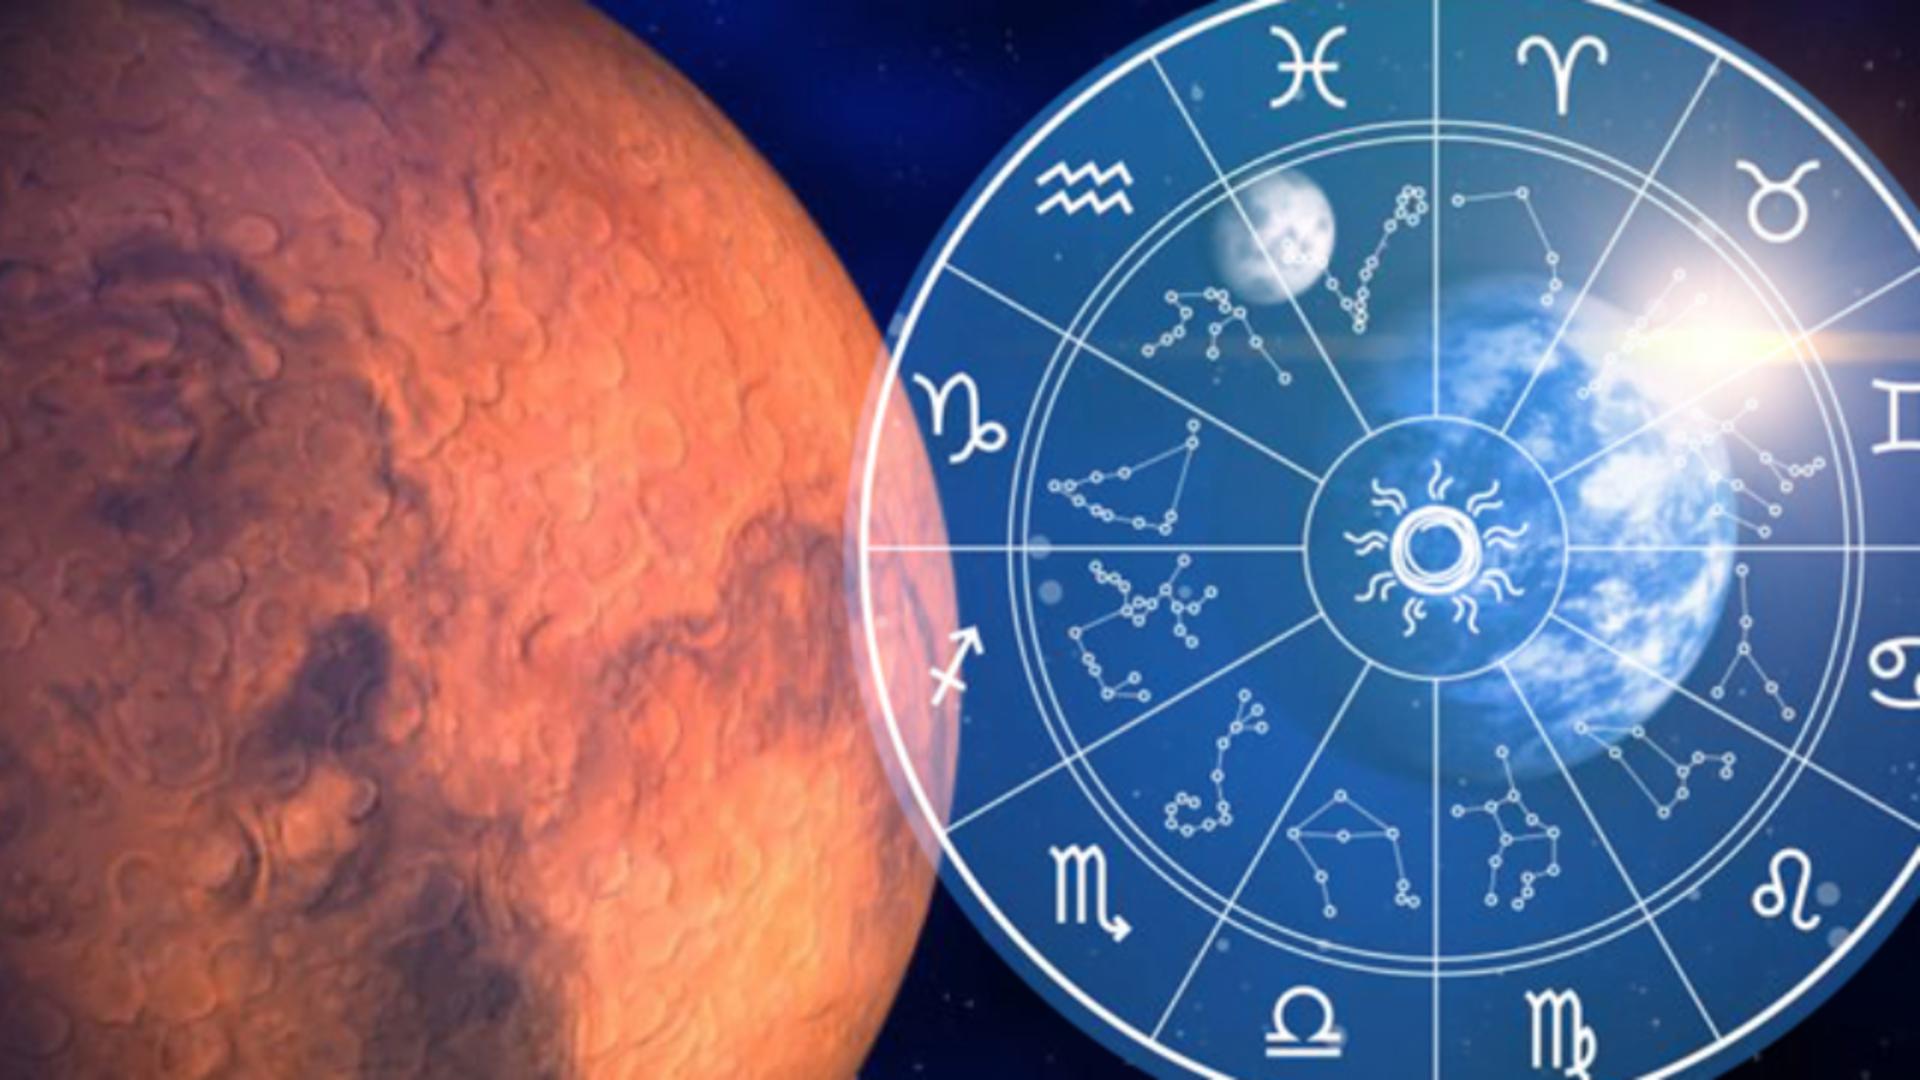  Iubăreții zodiacului Marte și Venus se întâlnesc în Vărsător. Cum vom resimți contopirea pe cer a Zeiței iubirii și a Războinicului neînfricat la finalul lui februarie